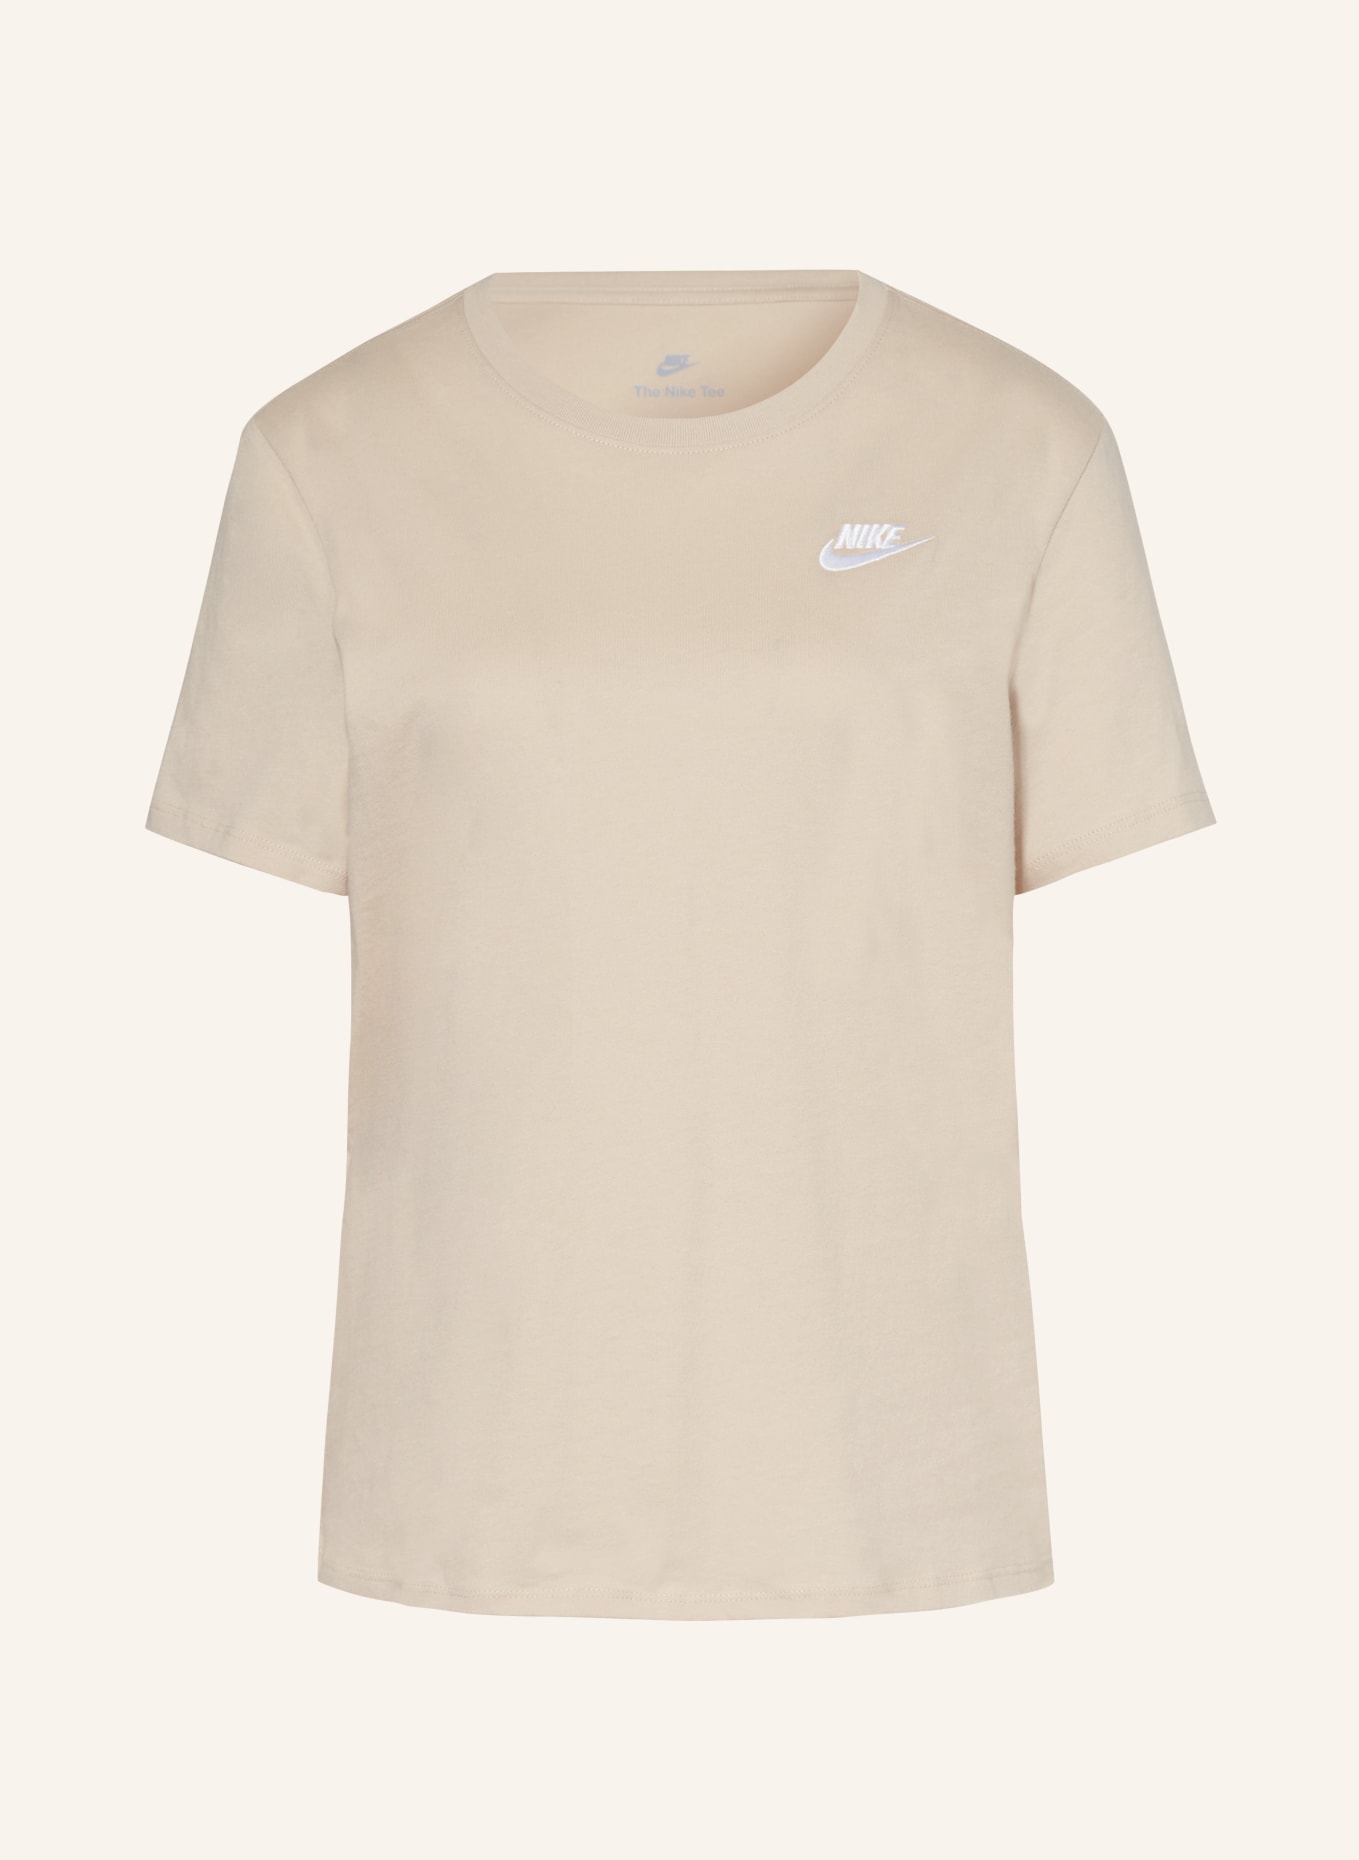 Nike T-shirt, Color: BEIGE (Image 1)